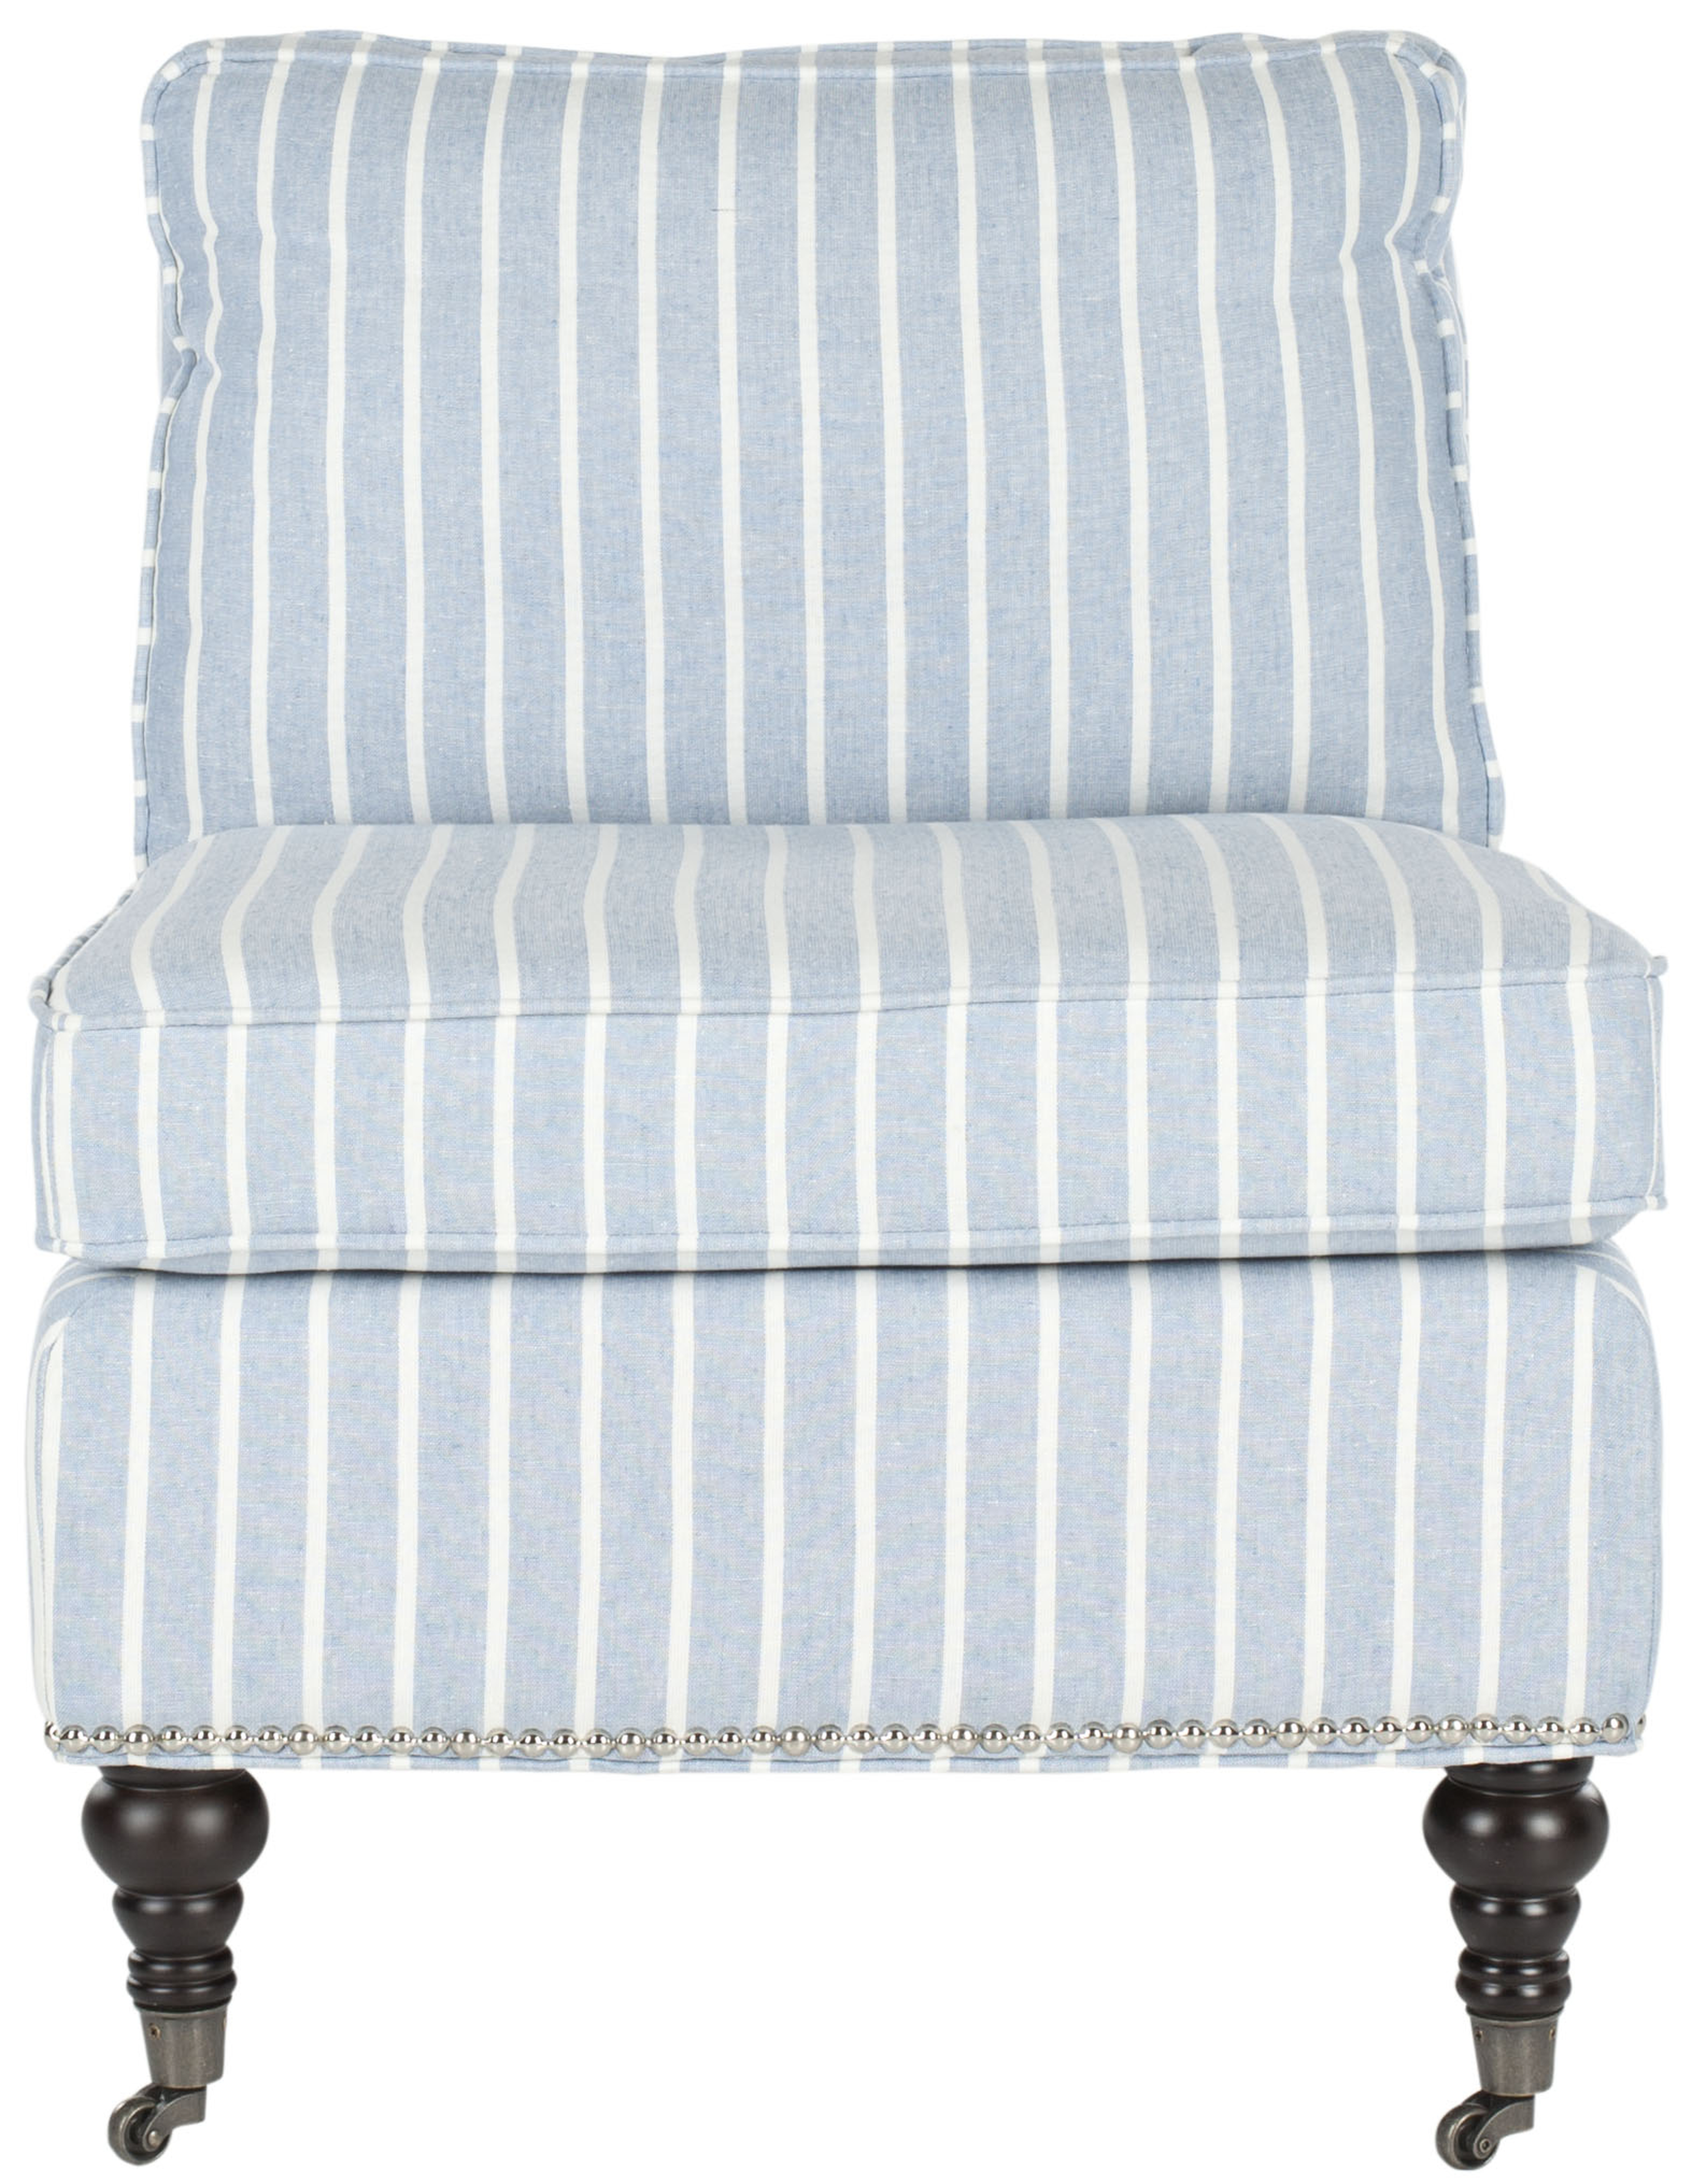 Randy Slipper Chair - Blue/White/Espresso - Arlo Home - Arlo Home